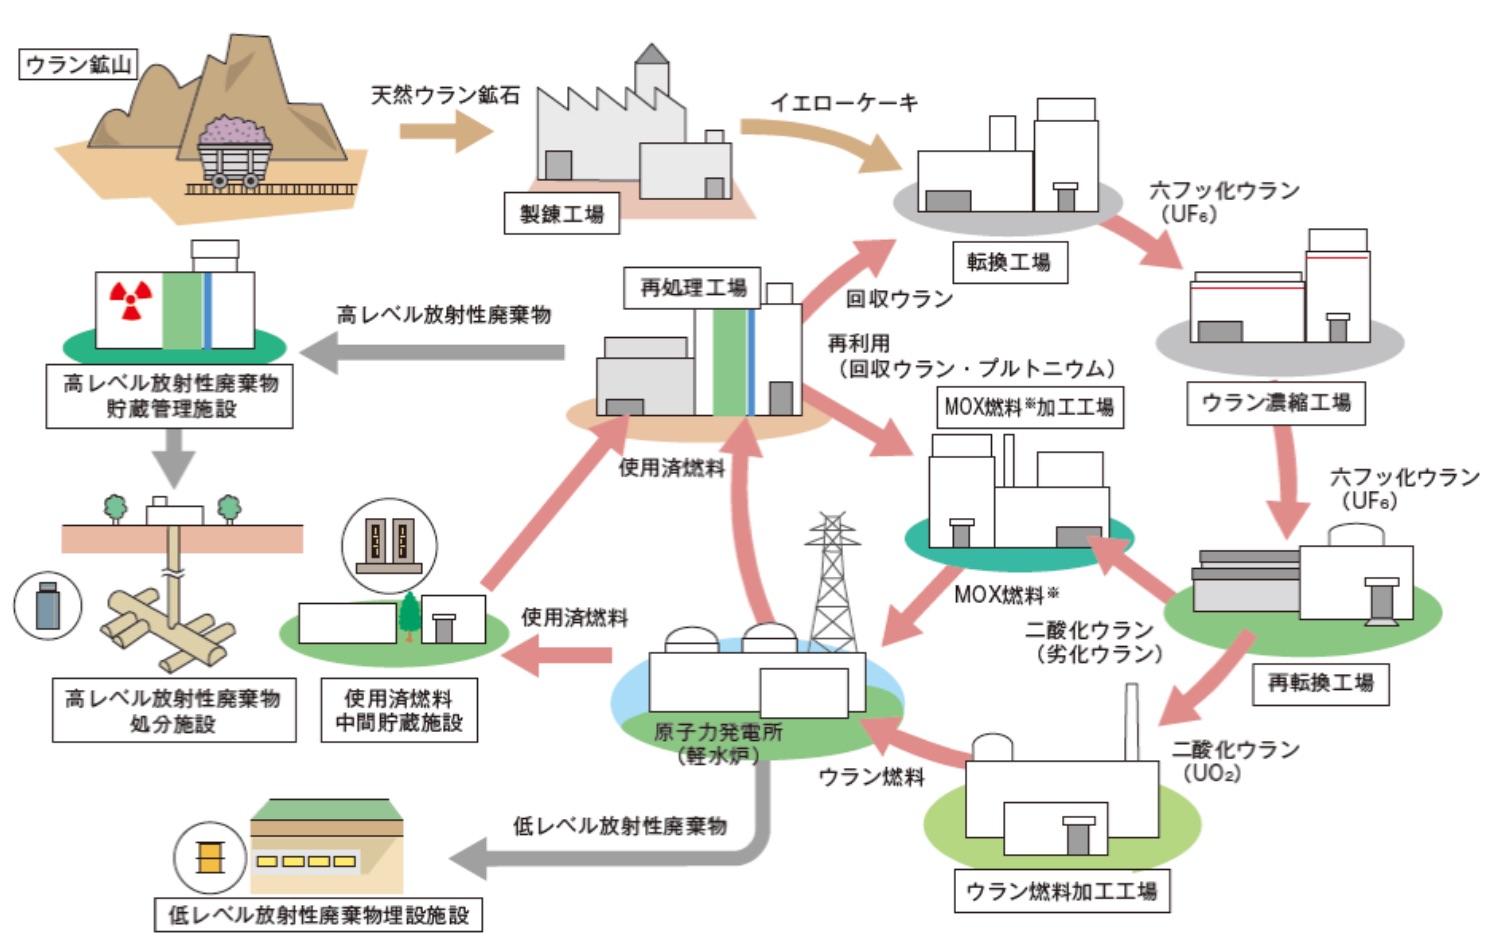 図 2-20　核燃料サイクルの概念